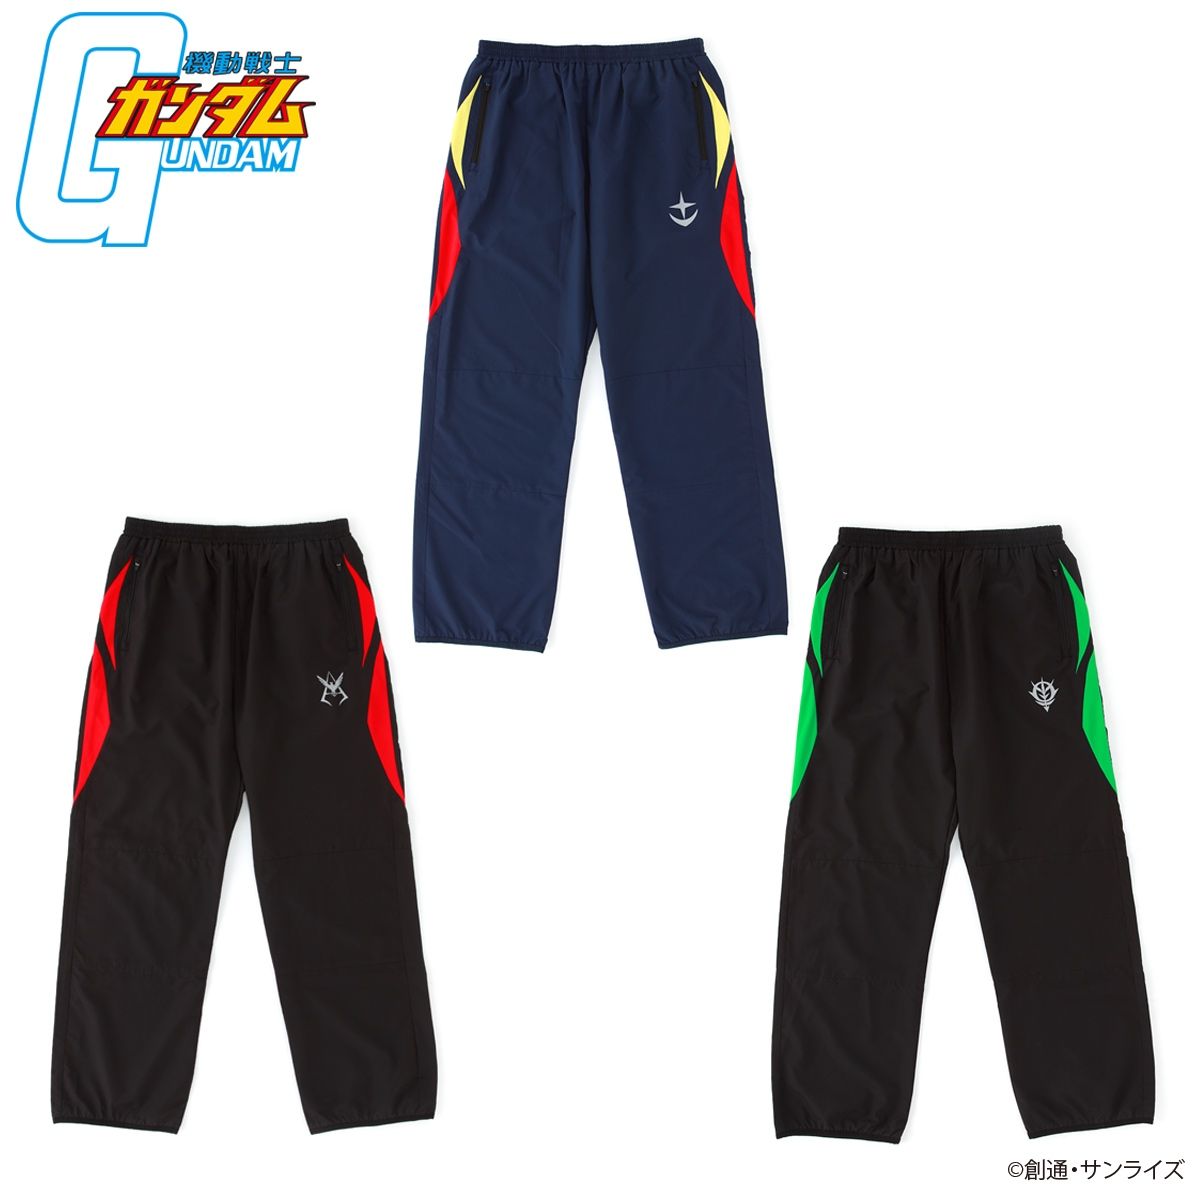 Mobile Suit Gundam Sportswear